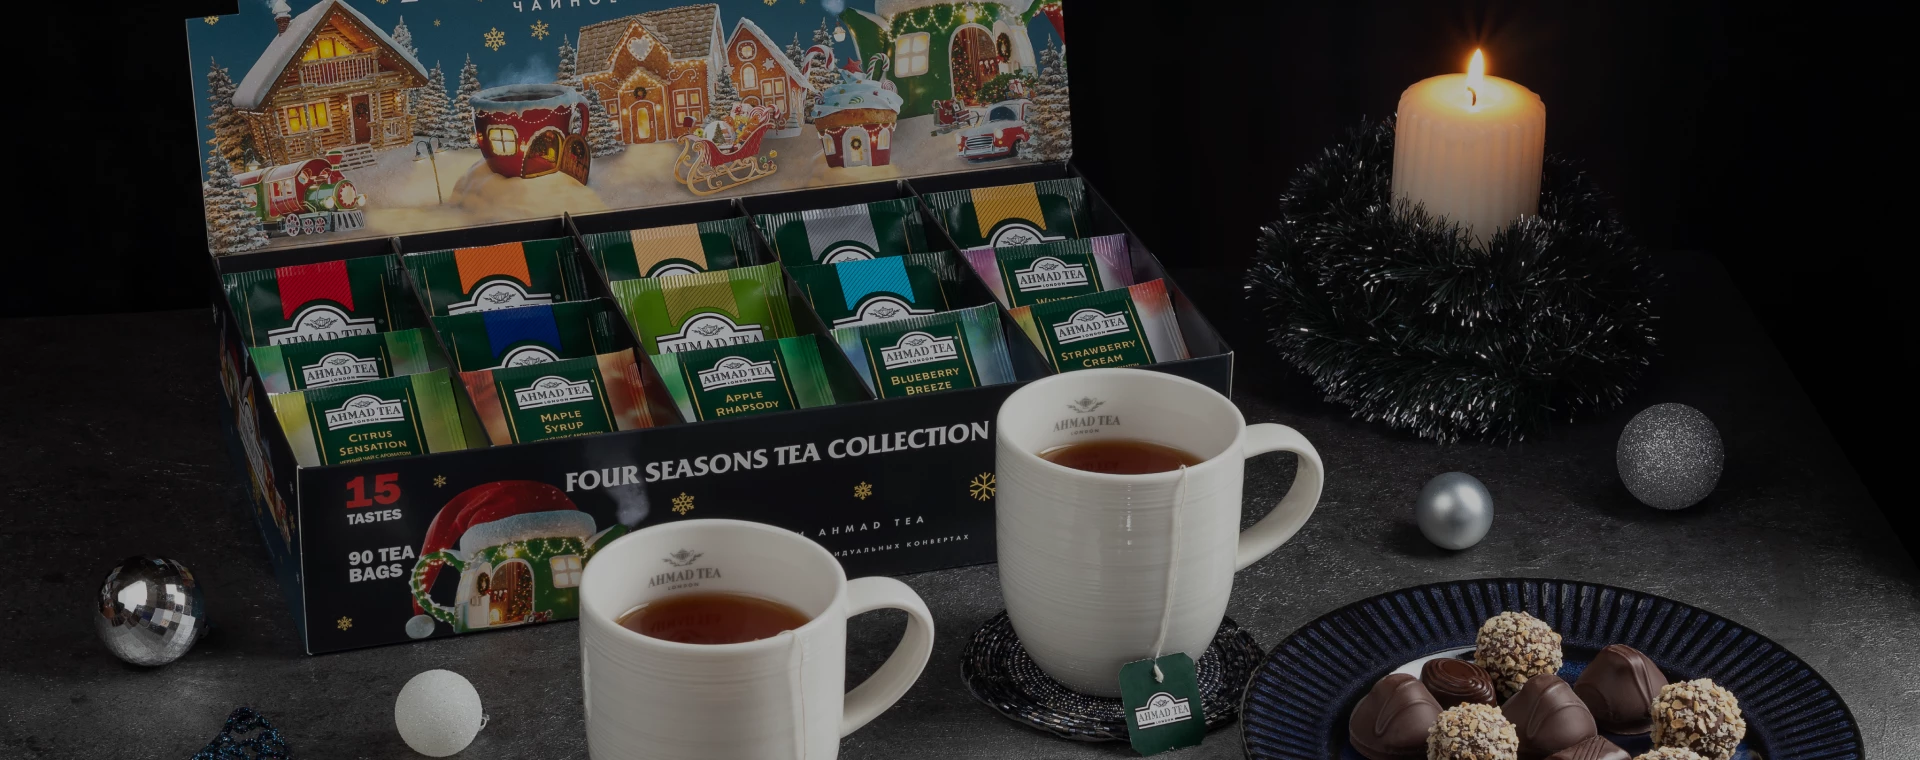 Делитесь теплом с близкими! Подарочные наборы чая со скидками в интернет-магазине shop.ahmadtea.ru